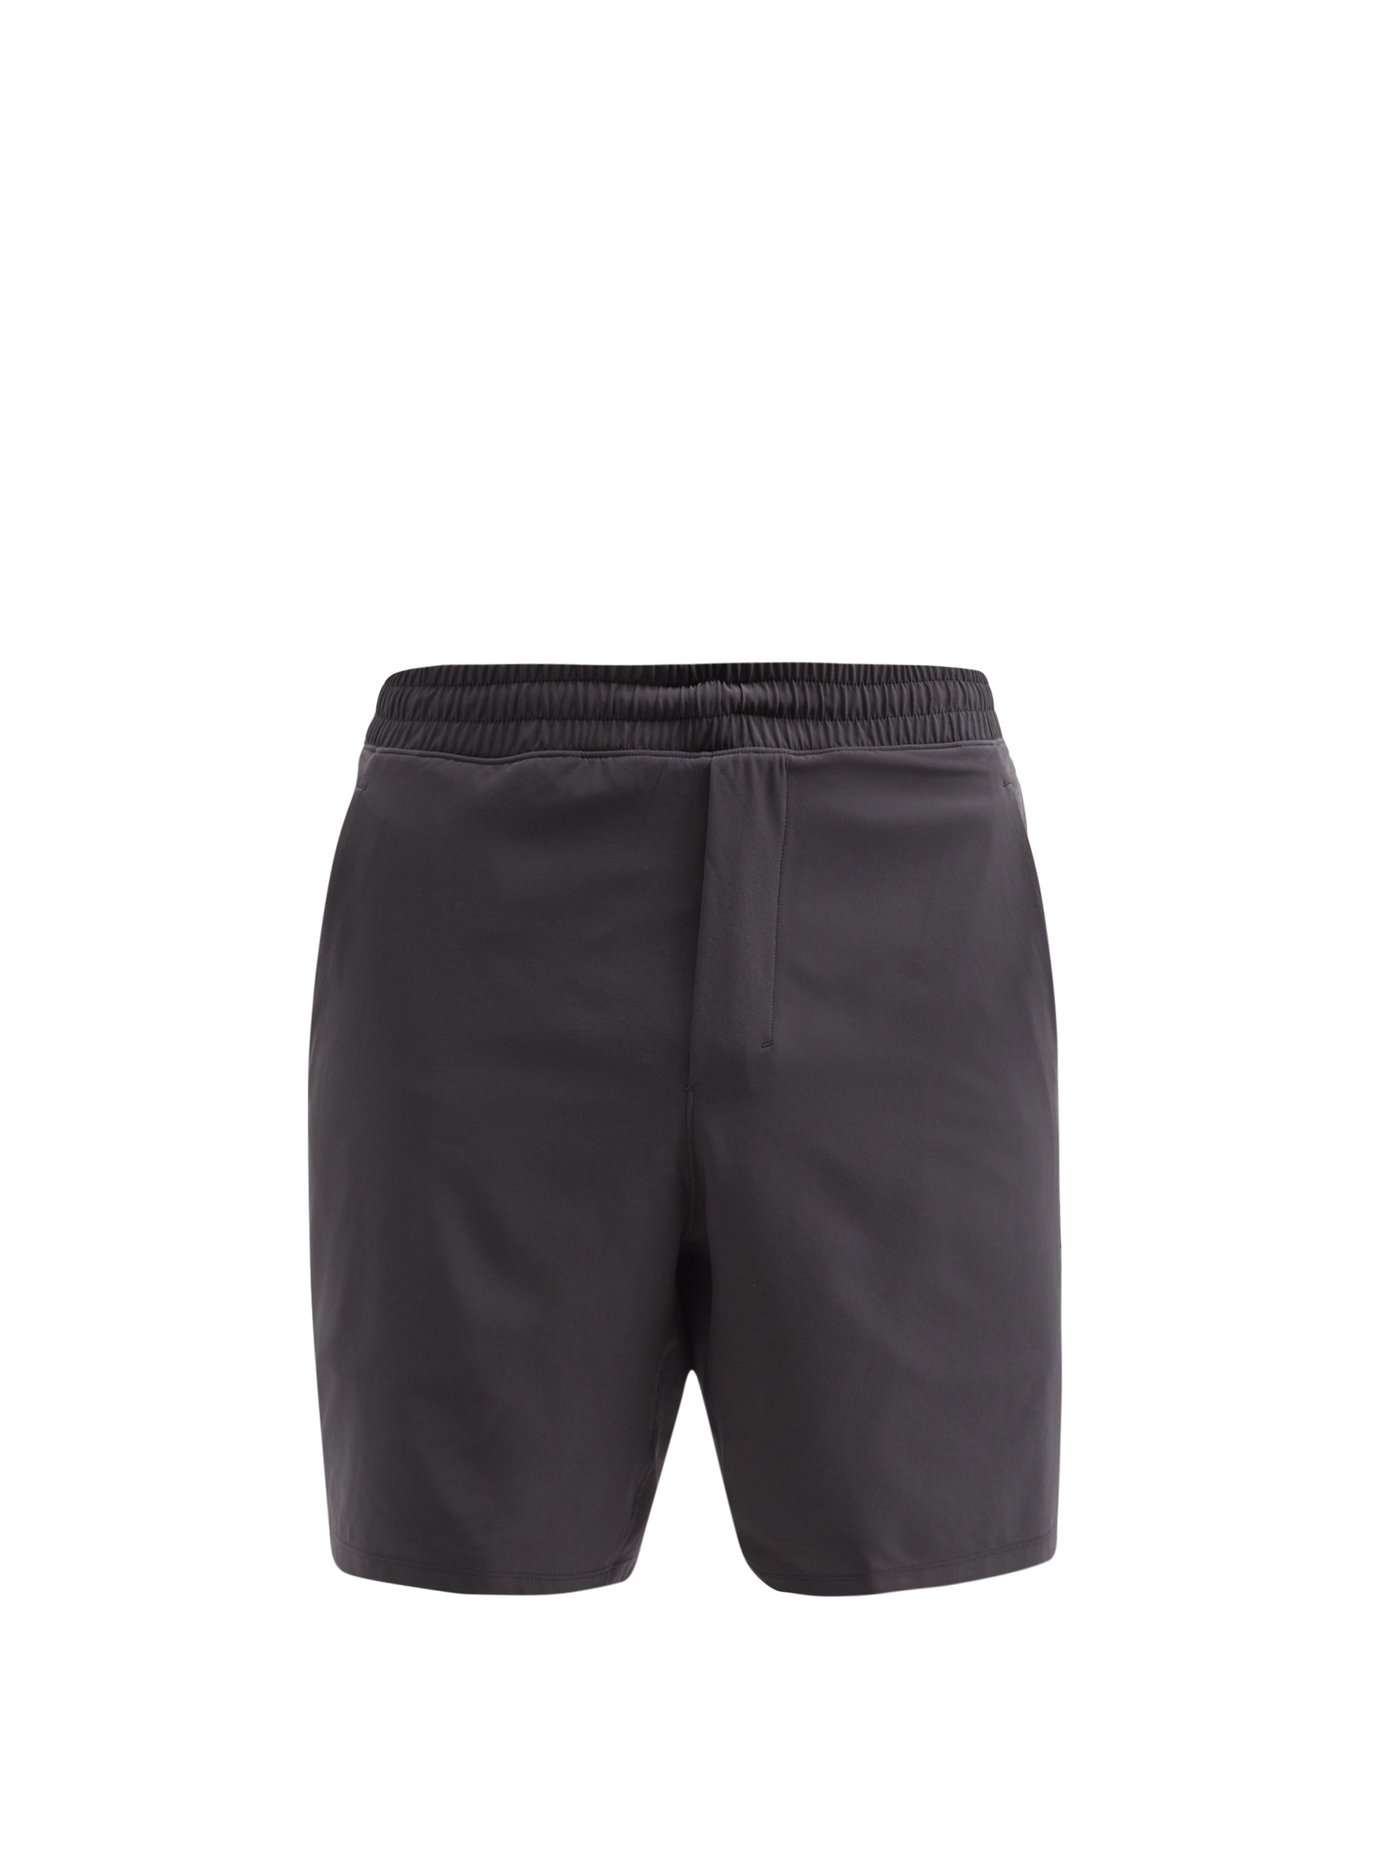 lululemon lined shorts